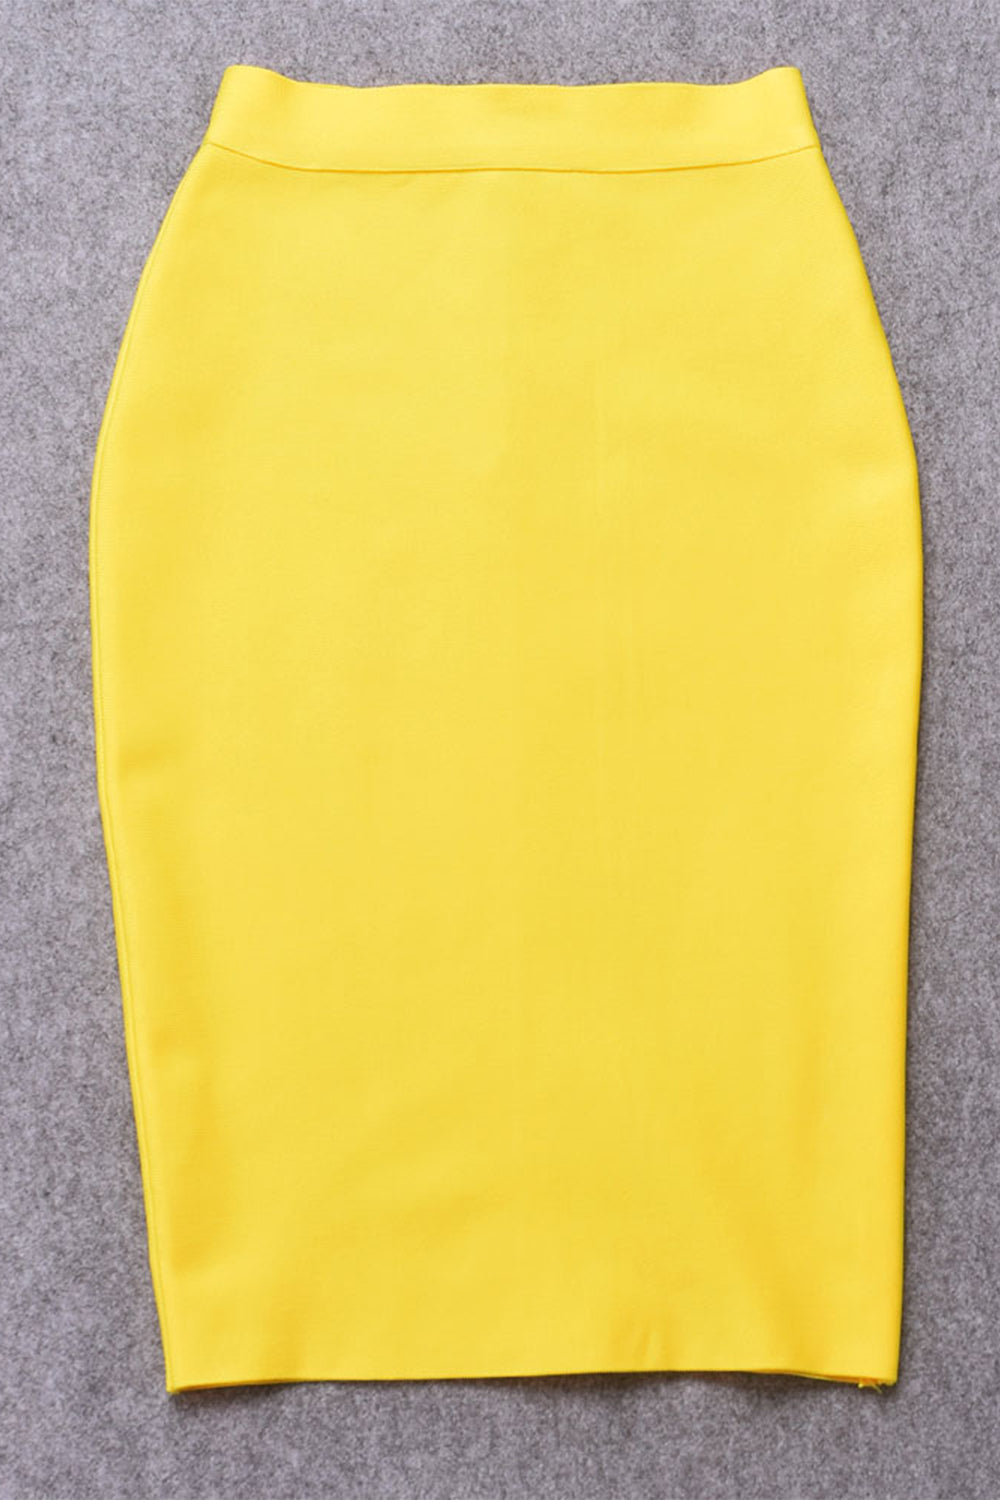 yellow skirt, yellow bandage skirt, yellow pencil skirt, skirt, bandage skirt, high waist bandage skirt, knee length bandage skirt, solid color skirt, pencil skirt, office skirt, bandage skirt for women, women’s bottom